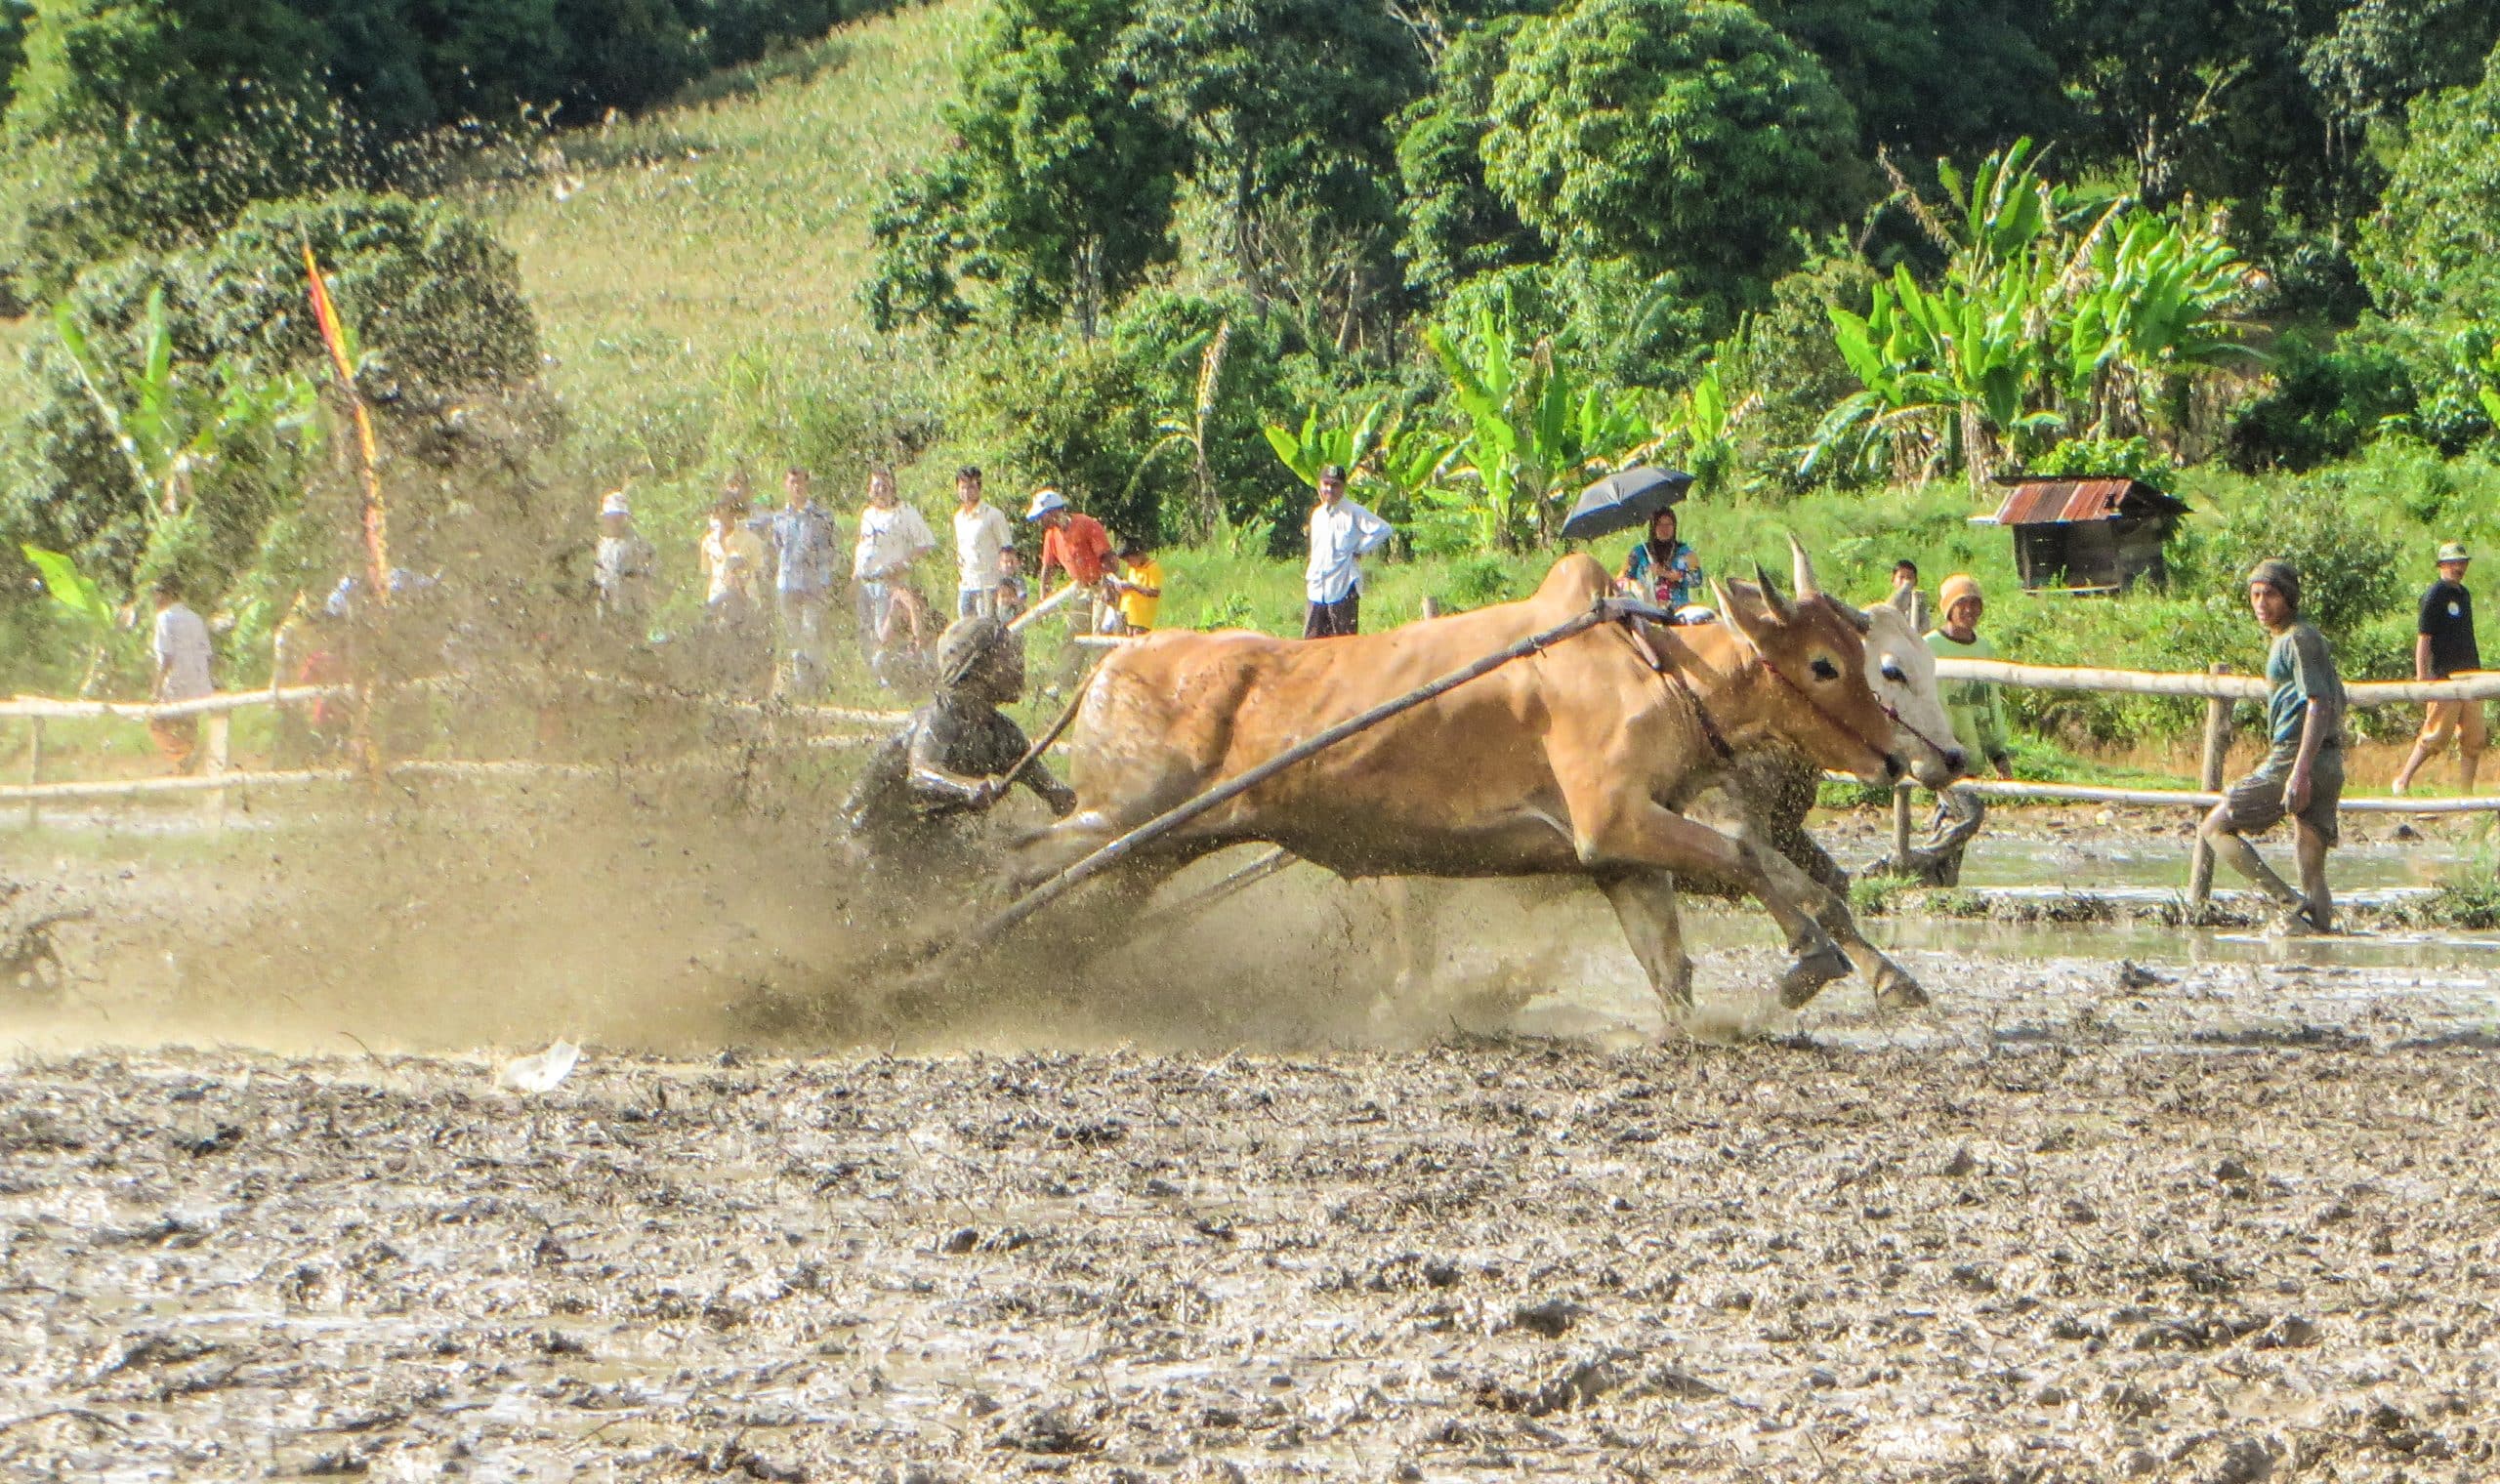 Cows racing - Padang Pacu Jawi Festival